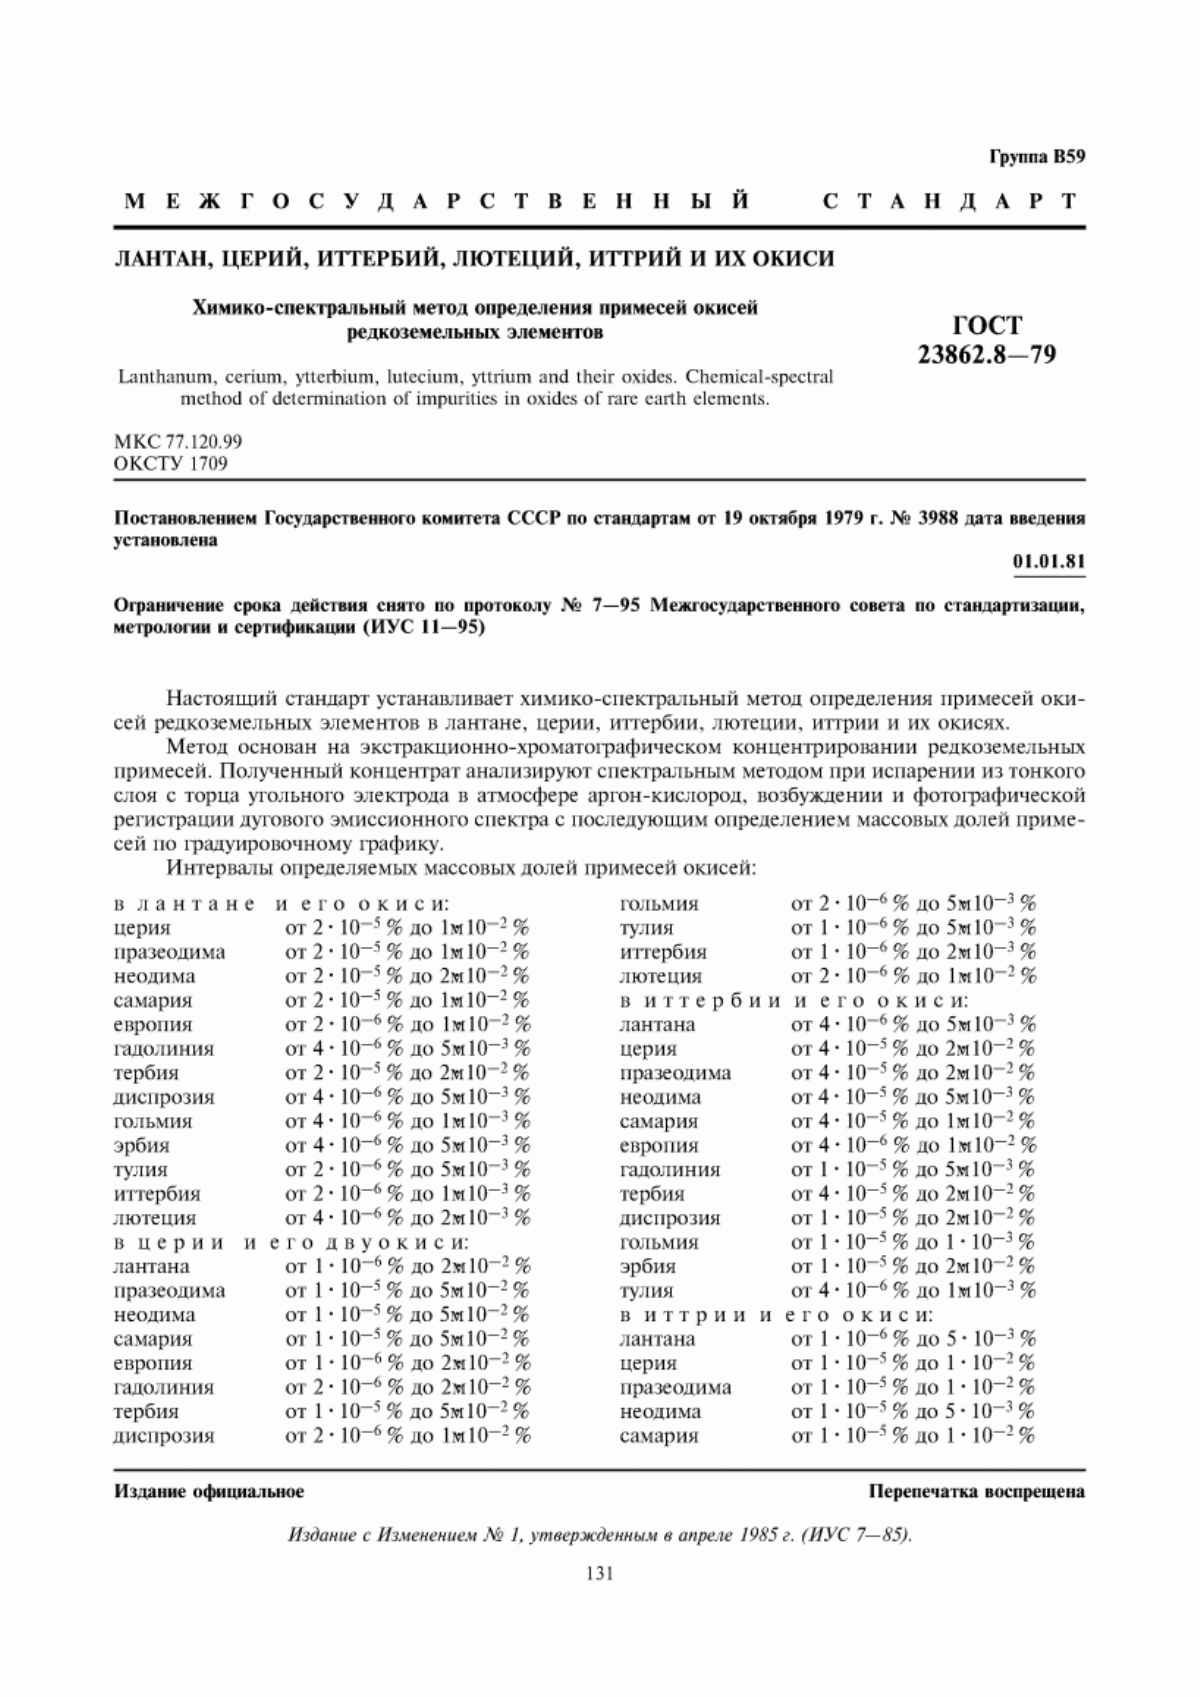 ГОСТ 23862.8-79 Лантан, церий, иттербий, лютеций, иттрий и их окиси. Химико-спектральный метод определения примесей окисей редкоземельных элементов